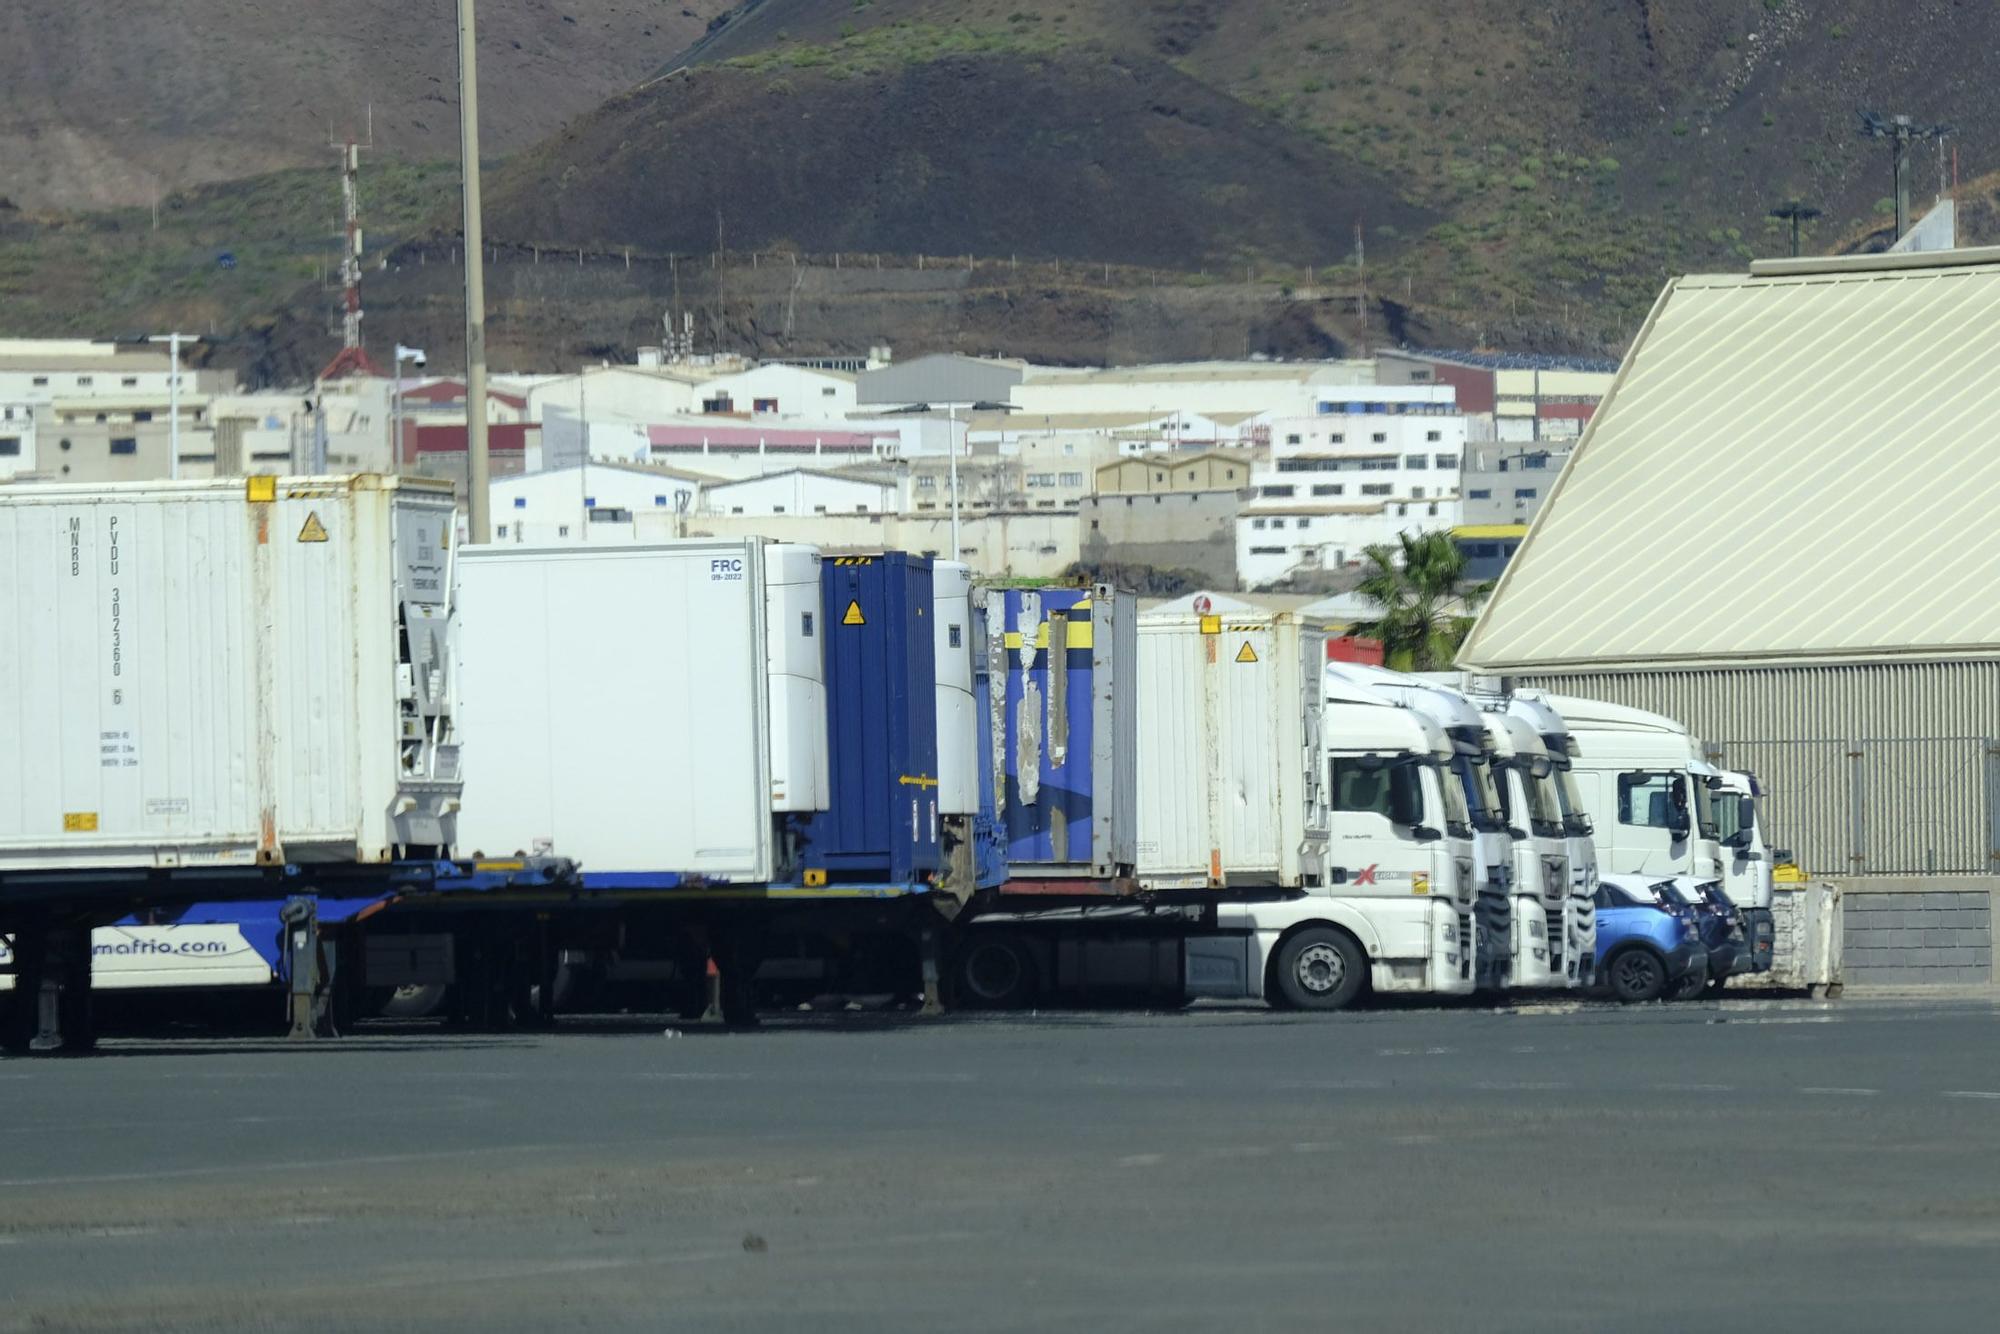 Huelga de transportistas en el Puerto de Las Palmas (27/02/23)